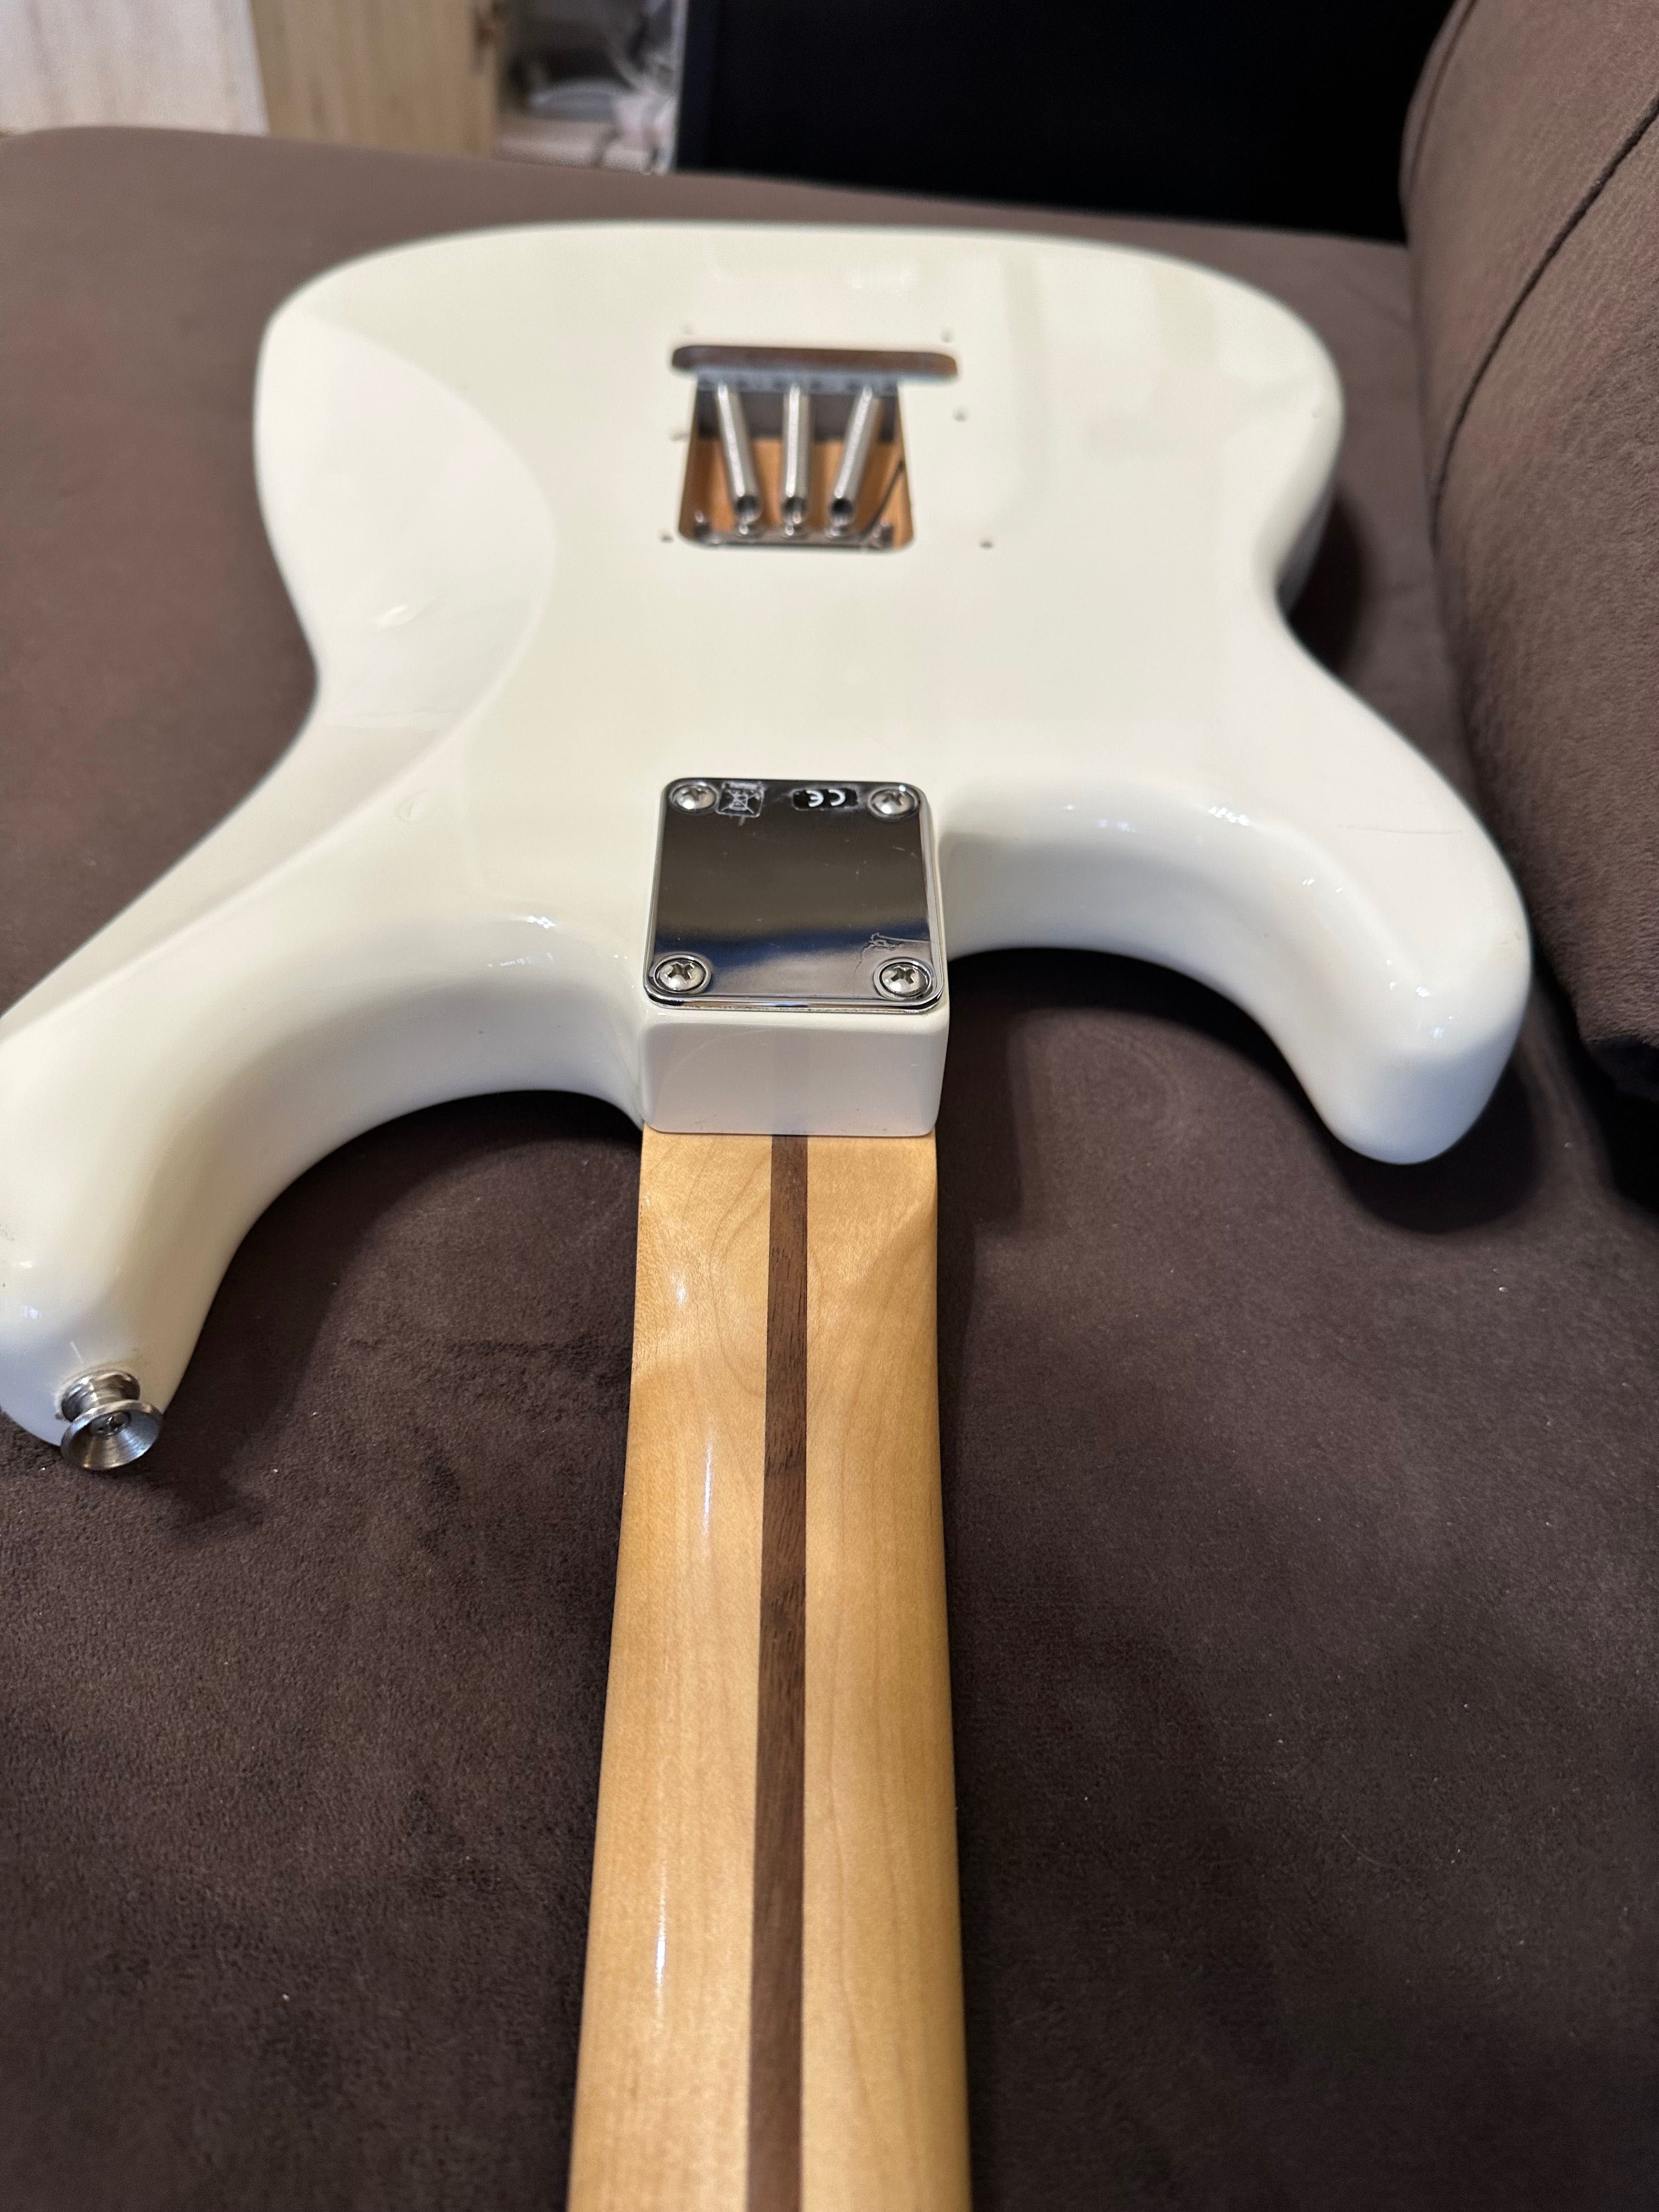 Китара Fender Stratocaster